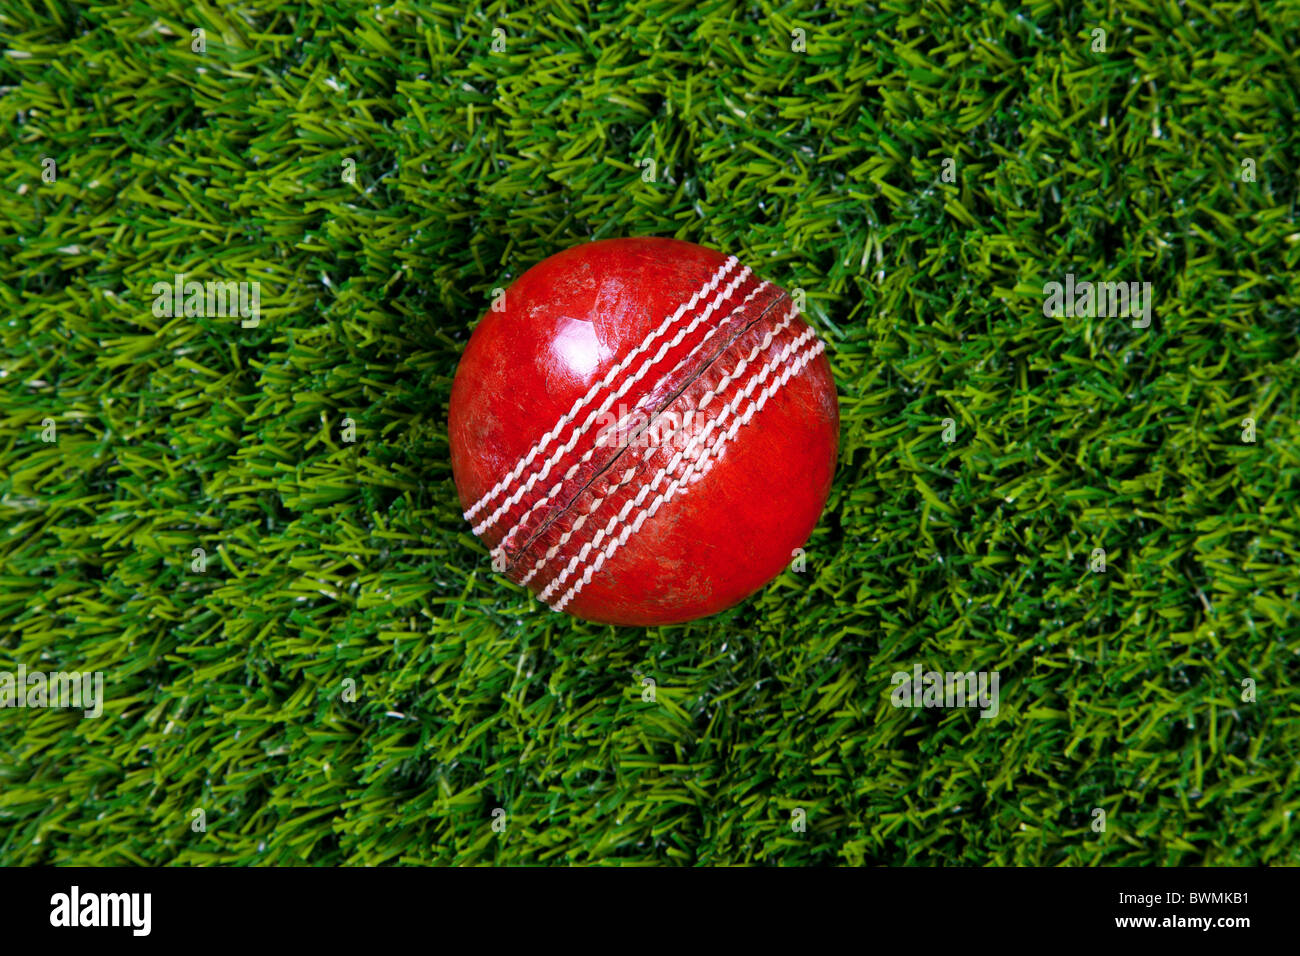 Foto de una bola de cricket de cuero rojo con costuras sobre el césped Foto de stock